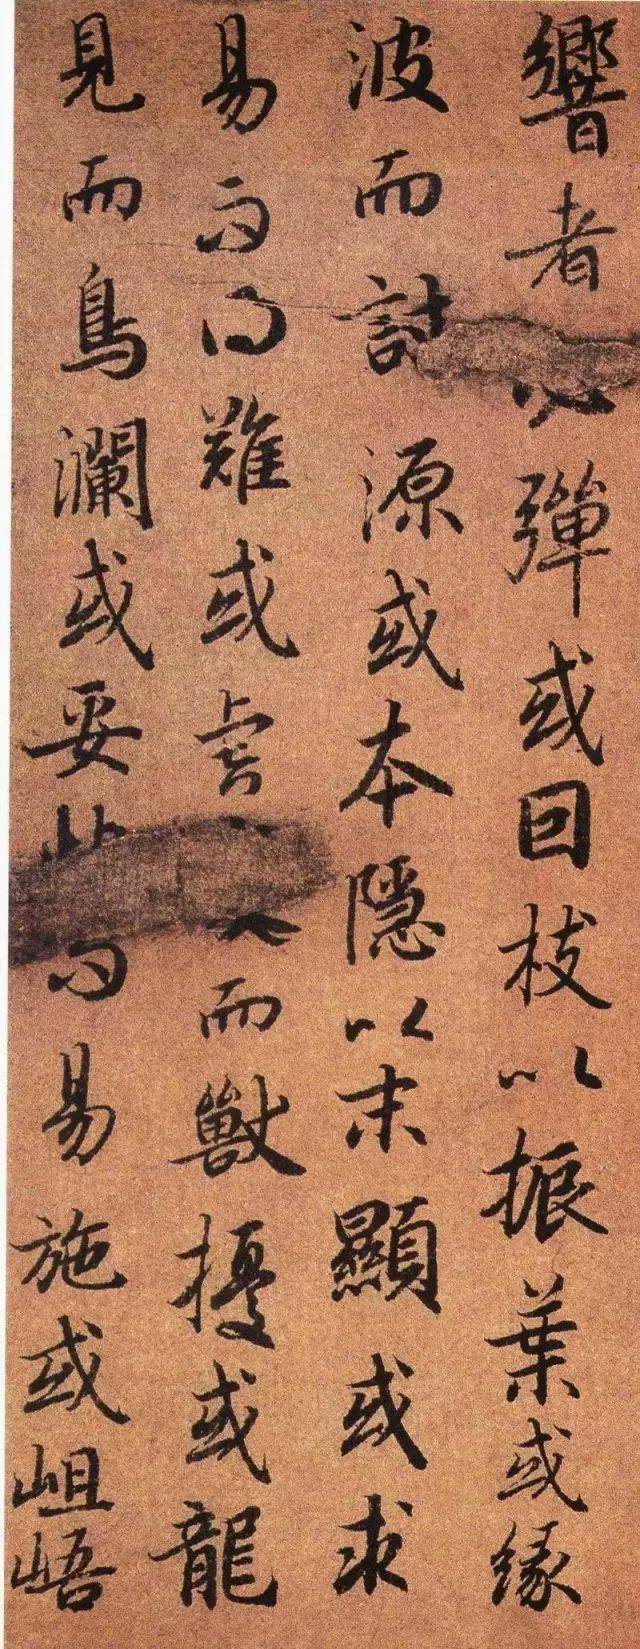 中华文化丨 初唐四大家陆柬之行书《书陆机文赋》(高清)